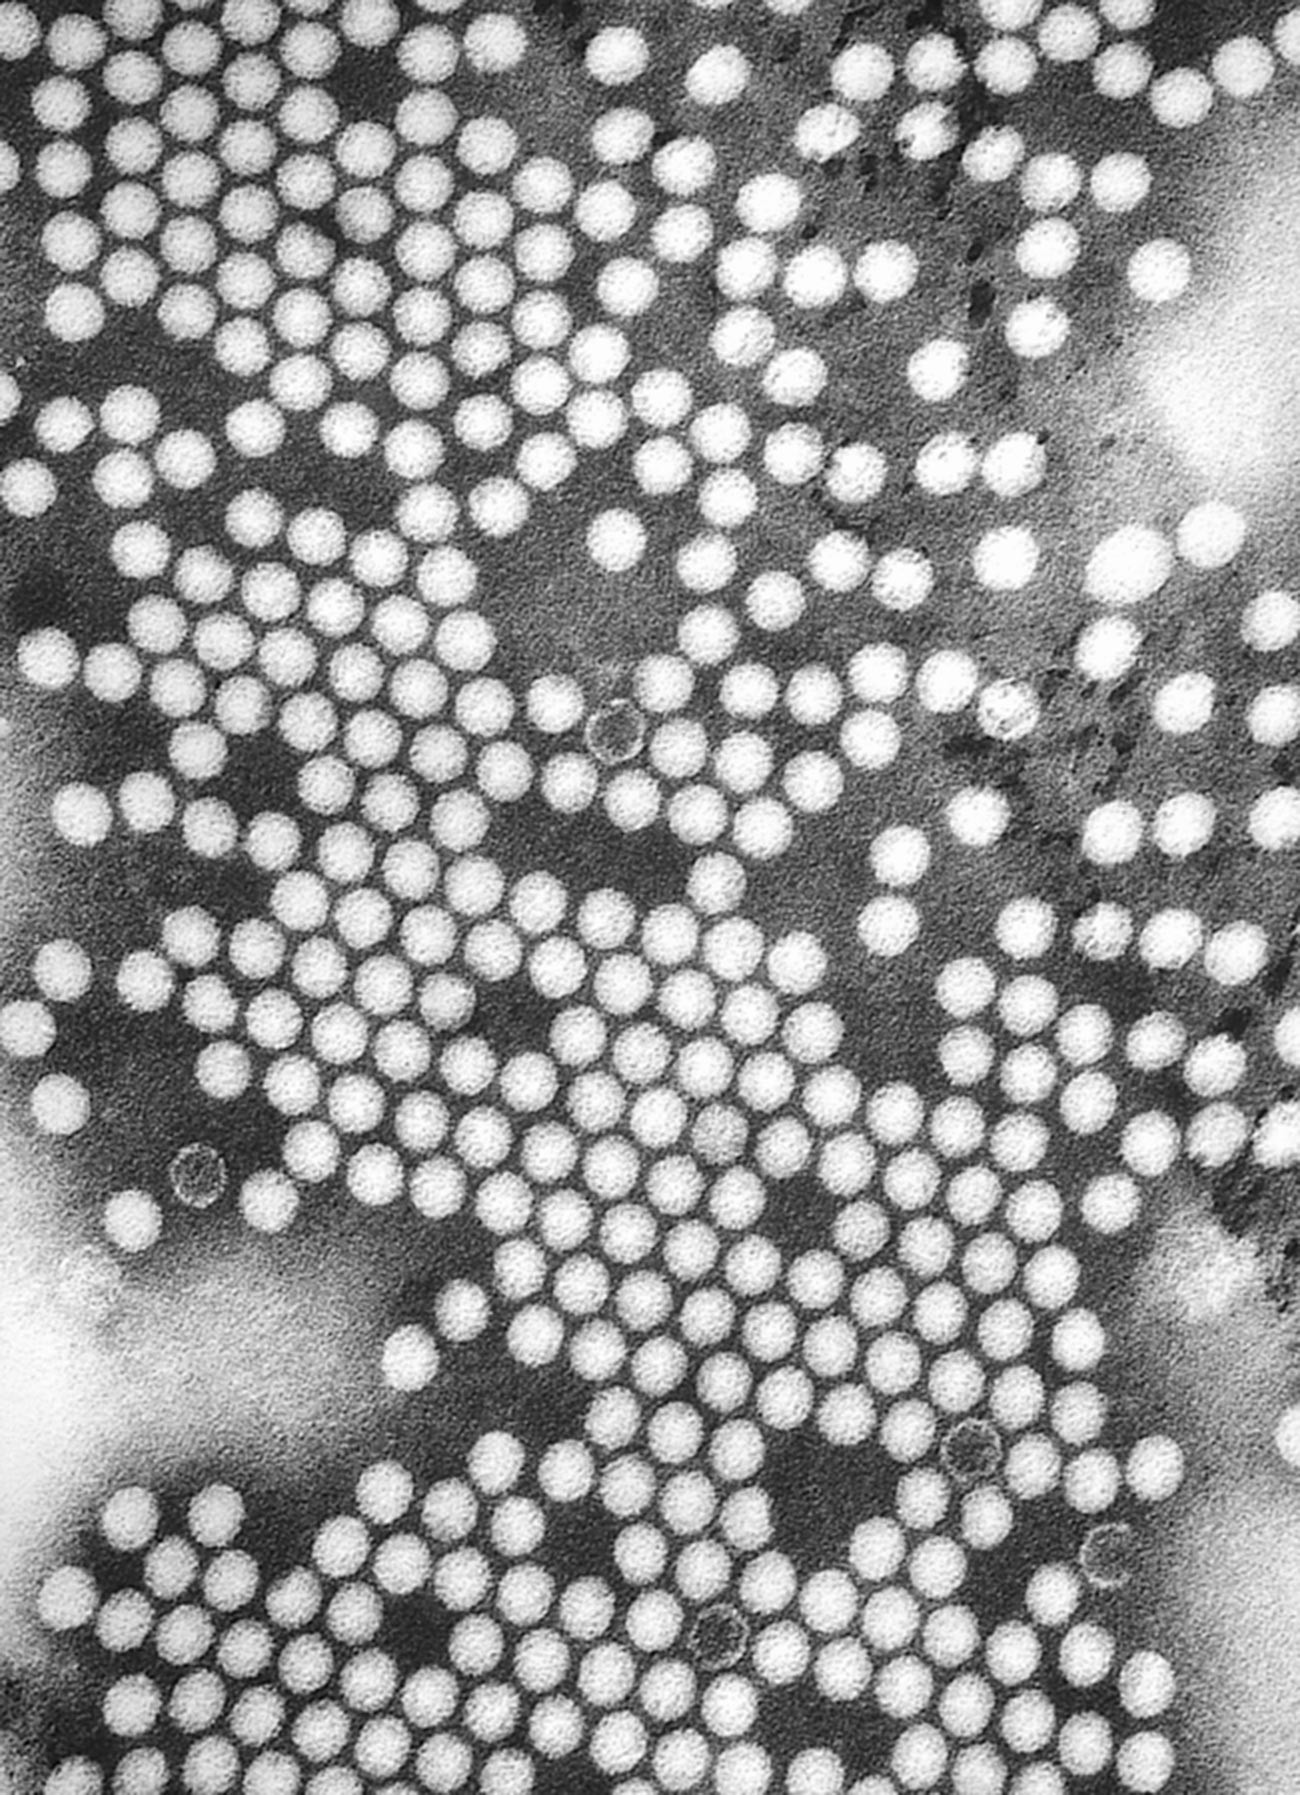 Il virus della poliomielite fotografato al microscopio